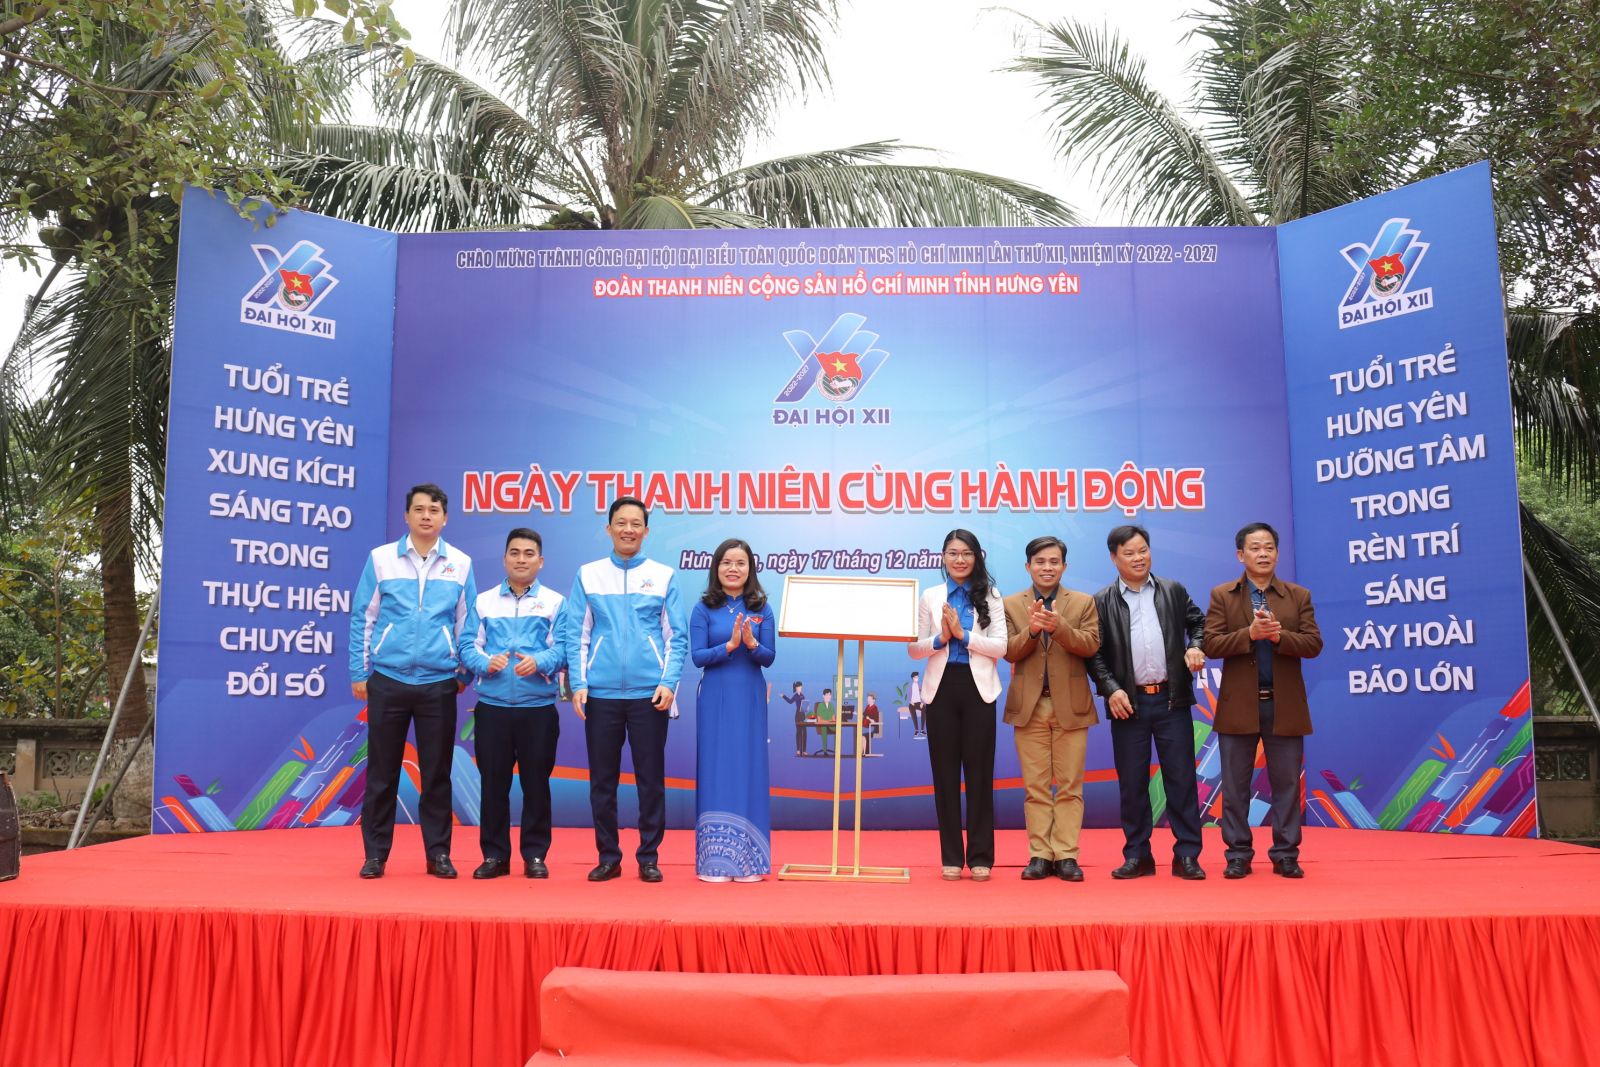 Tỉnh đoàn tổ chức Ngày thanh niên cùng hành động chào mừng thành công Đại hội đại biểu toàn quốc Đoàn TNCS Hồ Chí Minh lần thứ XII, nhiệm kỳ 2022-2027